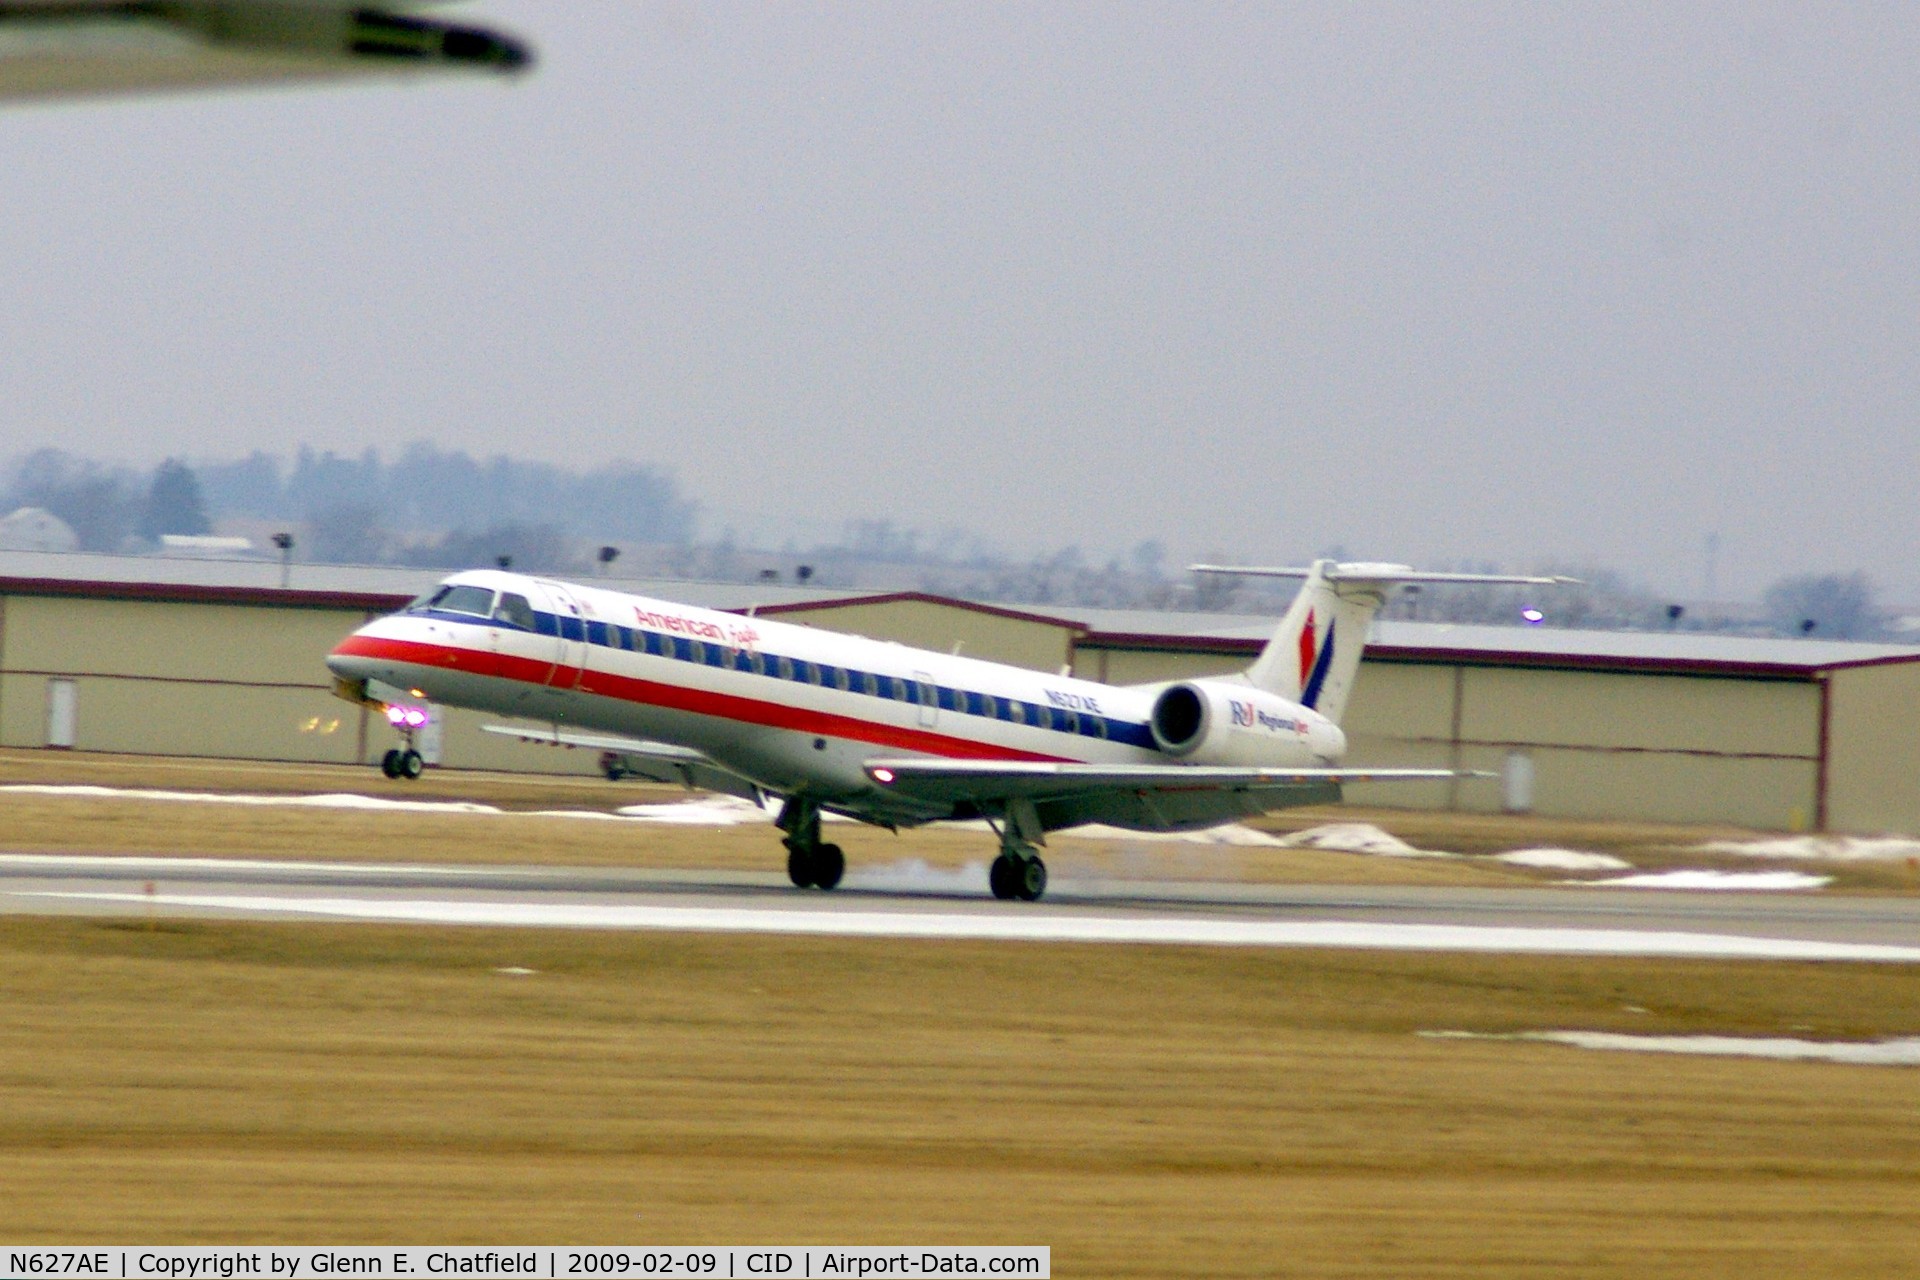 N627AE, 1999 Embraer ERJ-145LR (EMB-145LR) C/N 145121, Touching down on runway 13.  Hazy, and a wee bit blurred shot